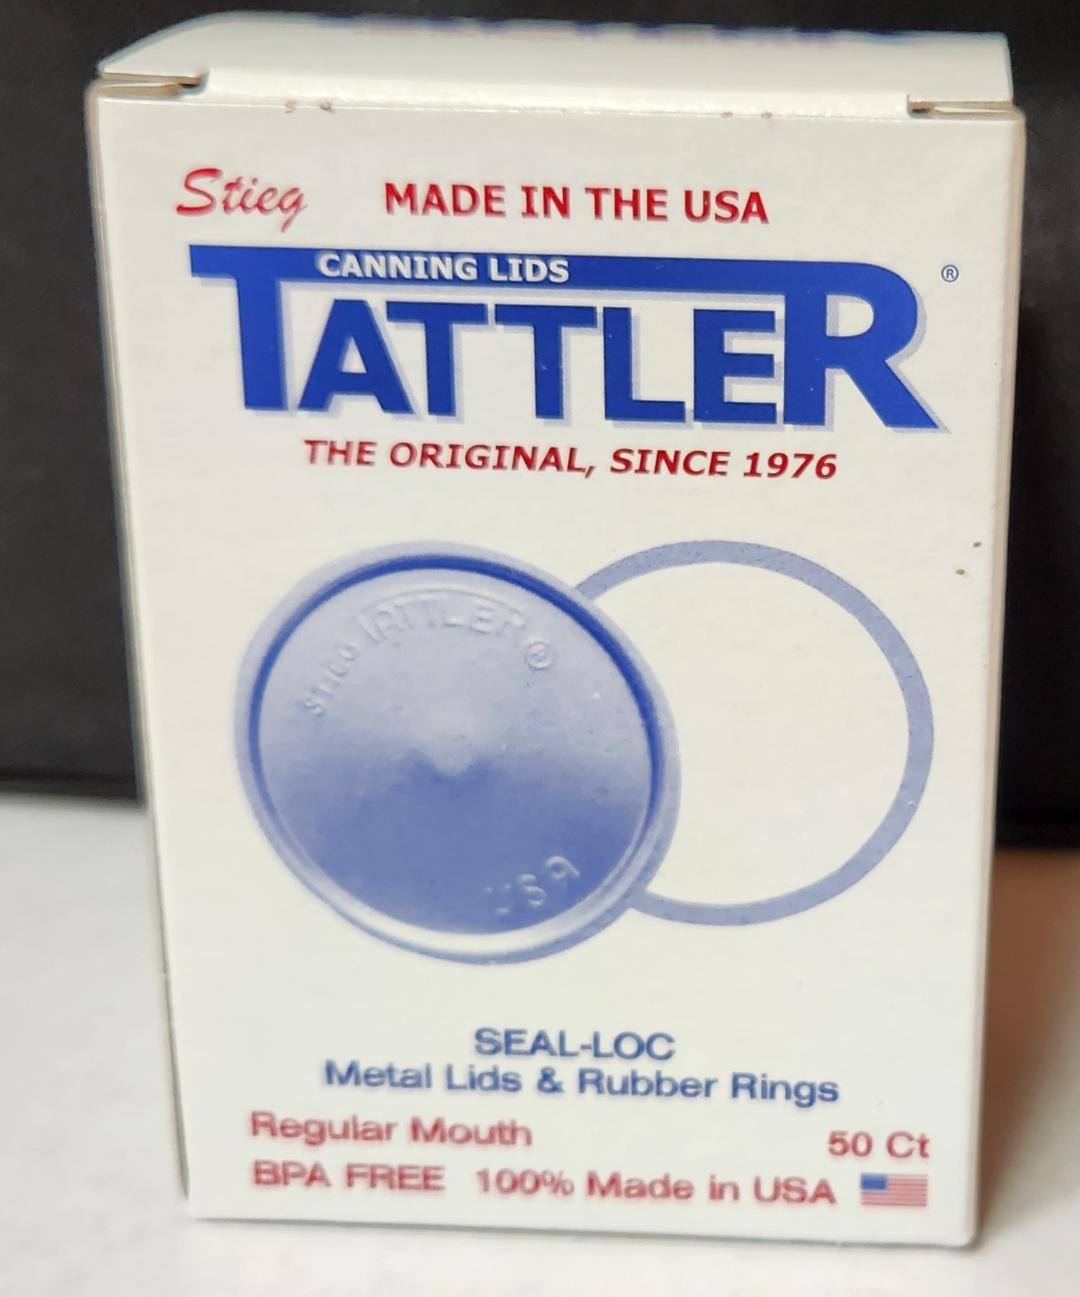 item 67] Jar Opener with Key Ring – Tattler Lids